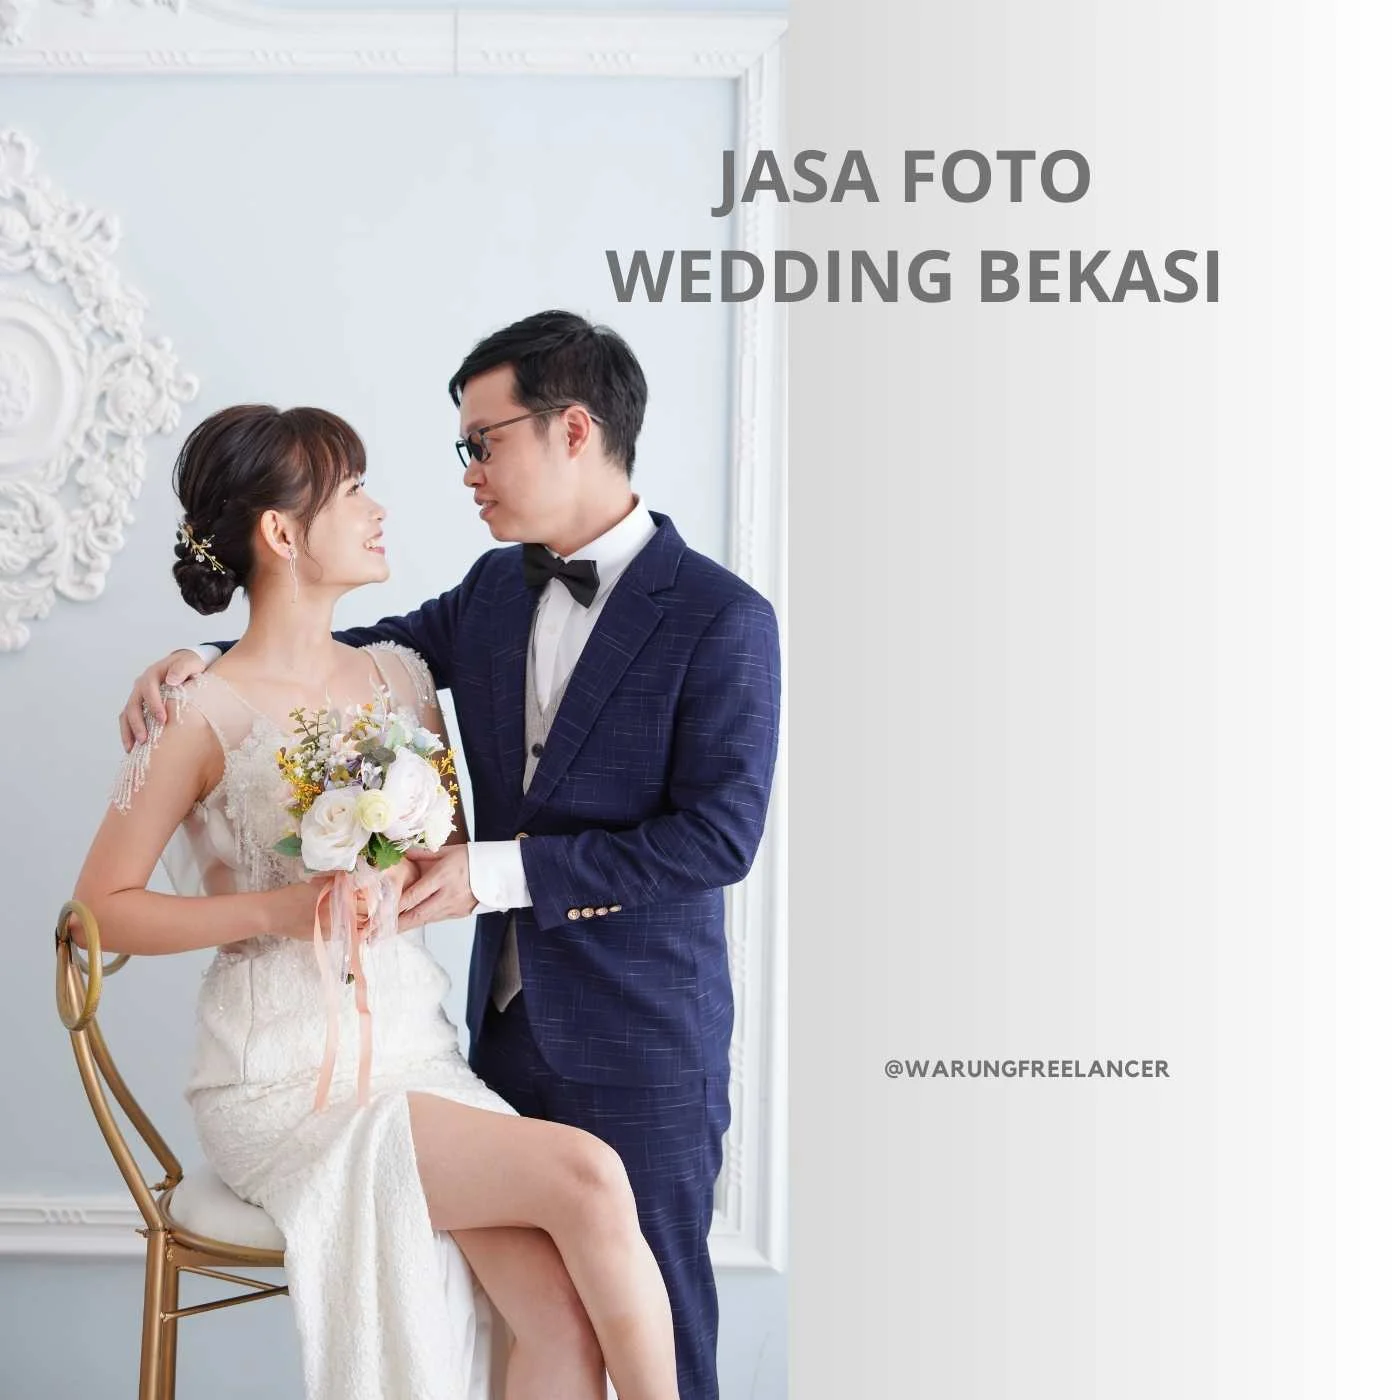 Jasa Foto Wedding Bekasi